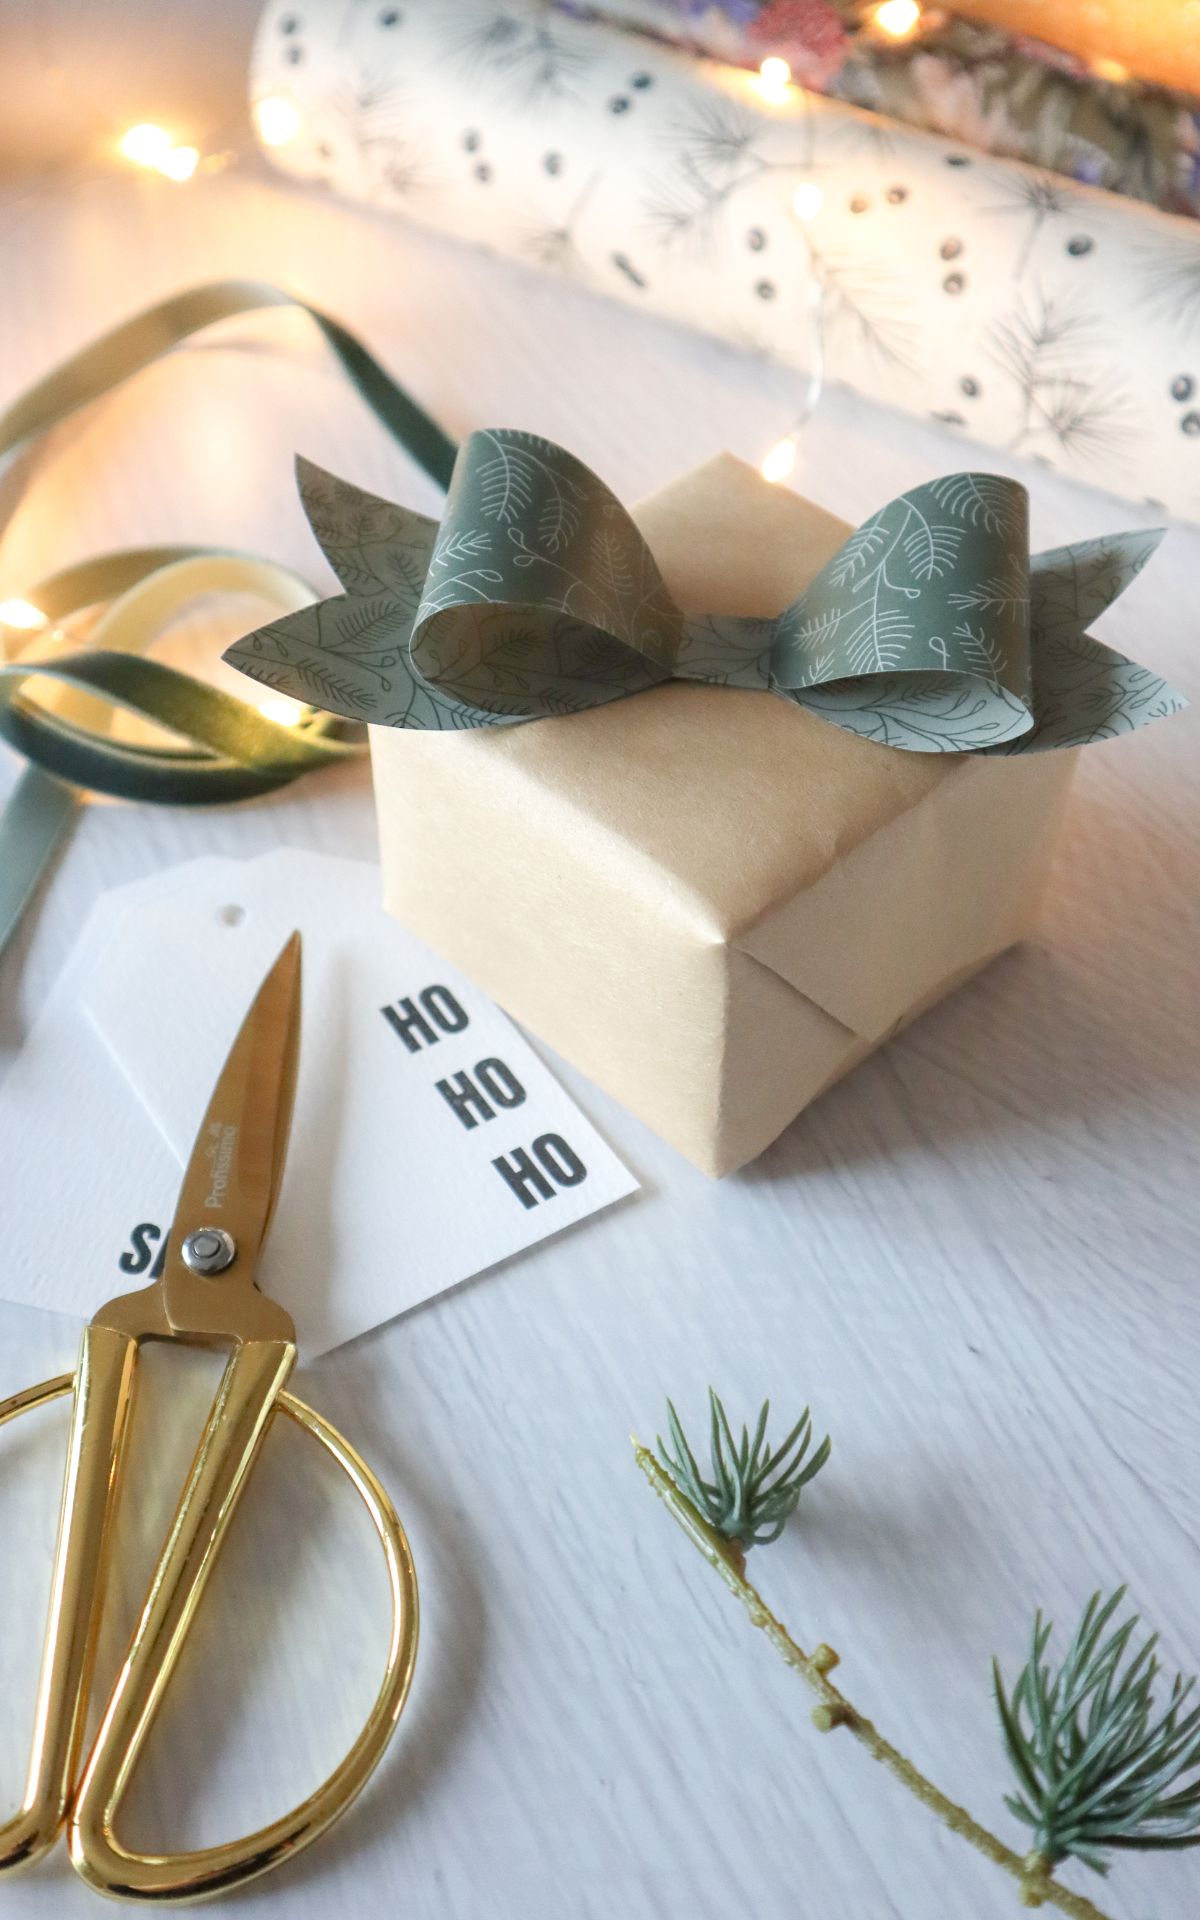 Geschenke nachhaltig verpacken? Mit diesen 5 Ideen für nachhaltige(re) Geschenkverpackung produzierst du garantiert weniger Müll - nicht nur zu Weihnachten.